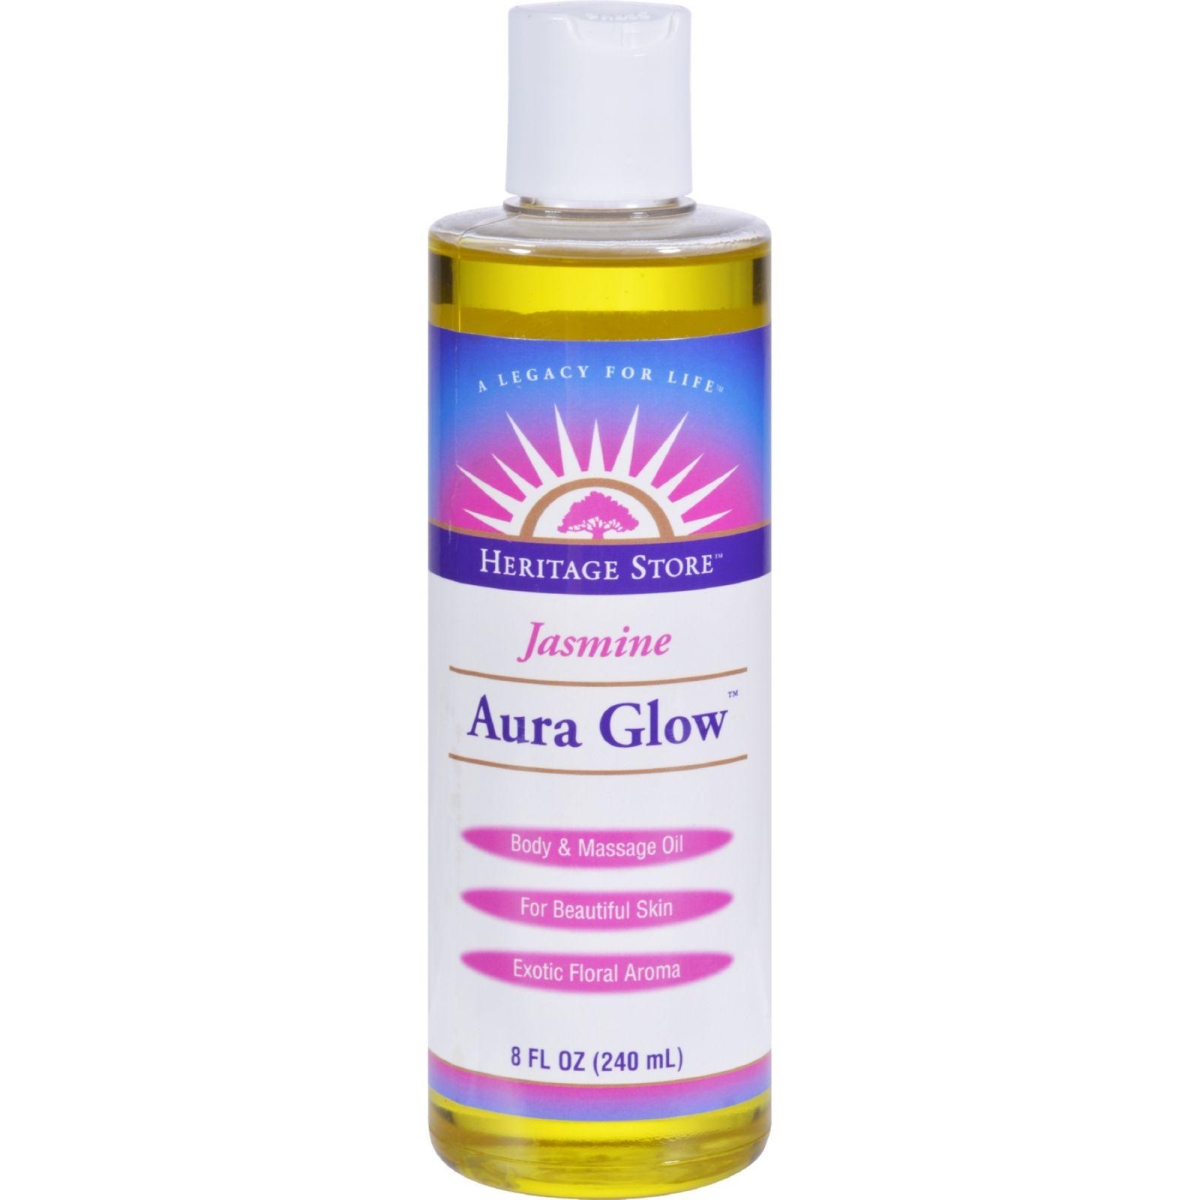 Hg0995407 8 Oz Aura Glow Body Oil - Jasmine